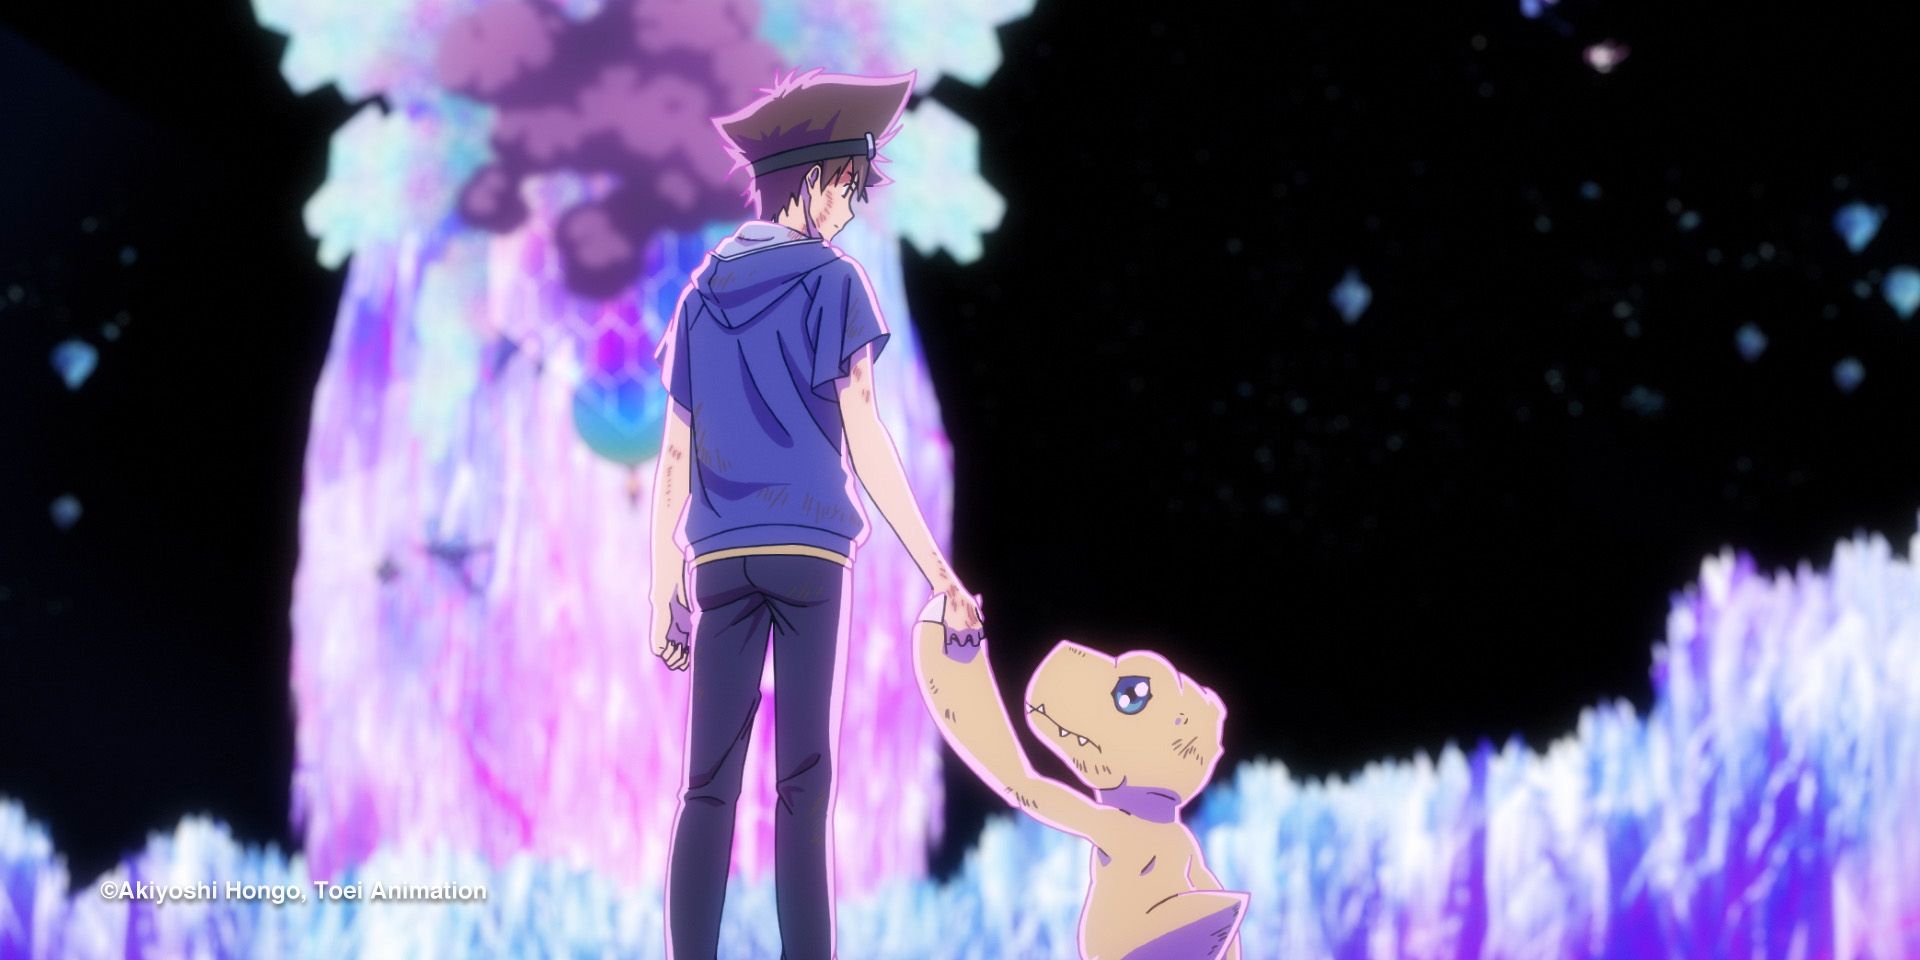 Tai tient Agumon lors de la conclusion de Digimon Adventure: Last Evolution Kizuna.